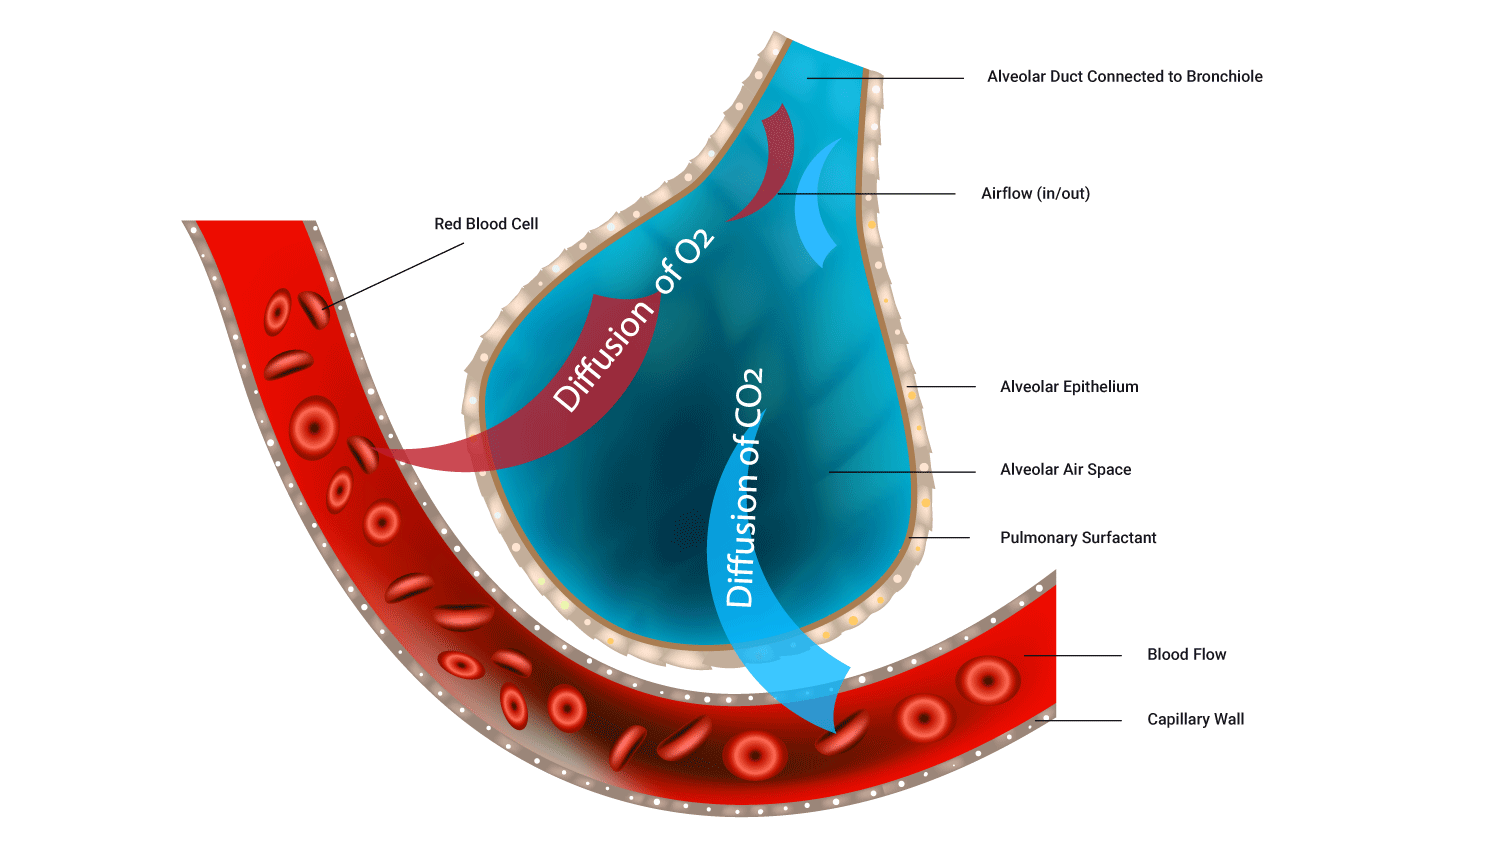 Image showing gas exchange between alveoli and blood